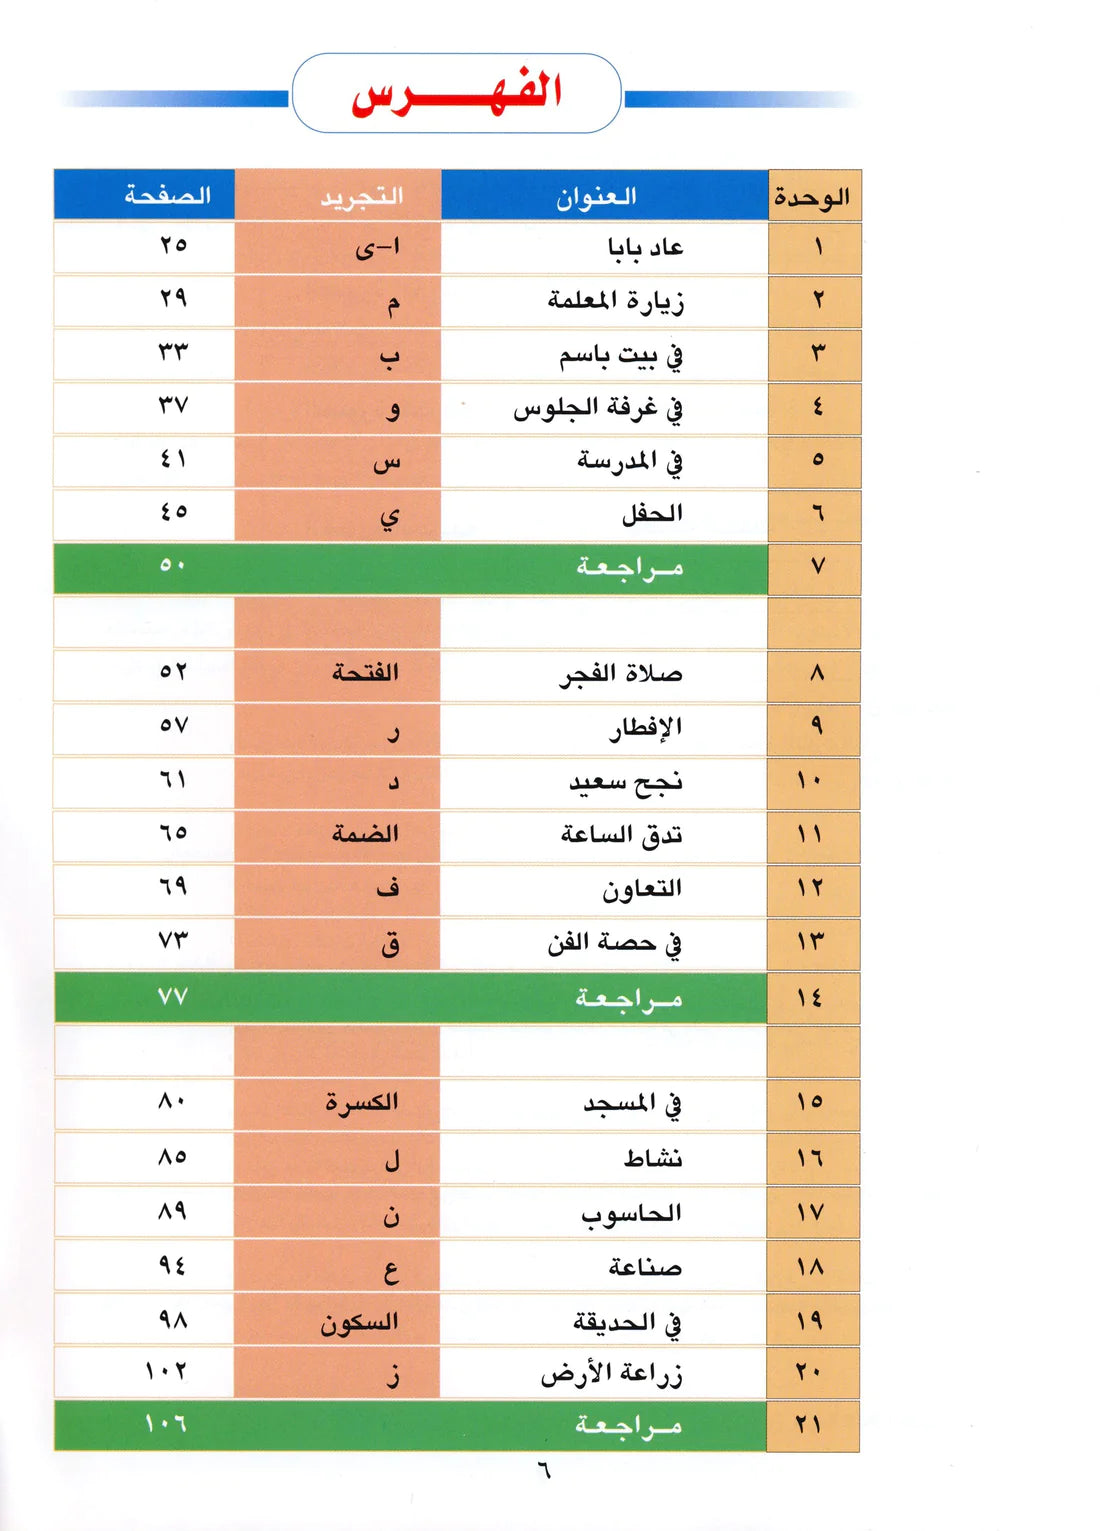 Al Aafaq Horizons in the Arabic Language Textbook: Level 1 (New Edition) الافاق في اللغة العربية كتاب الطالب